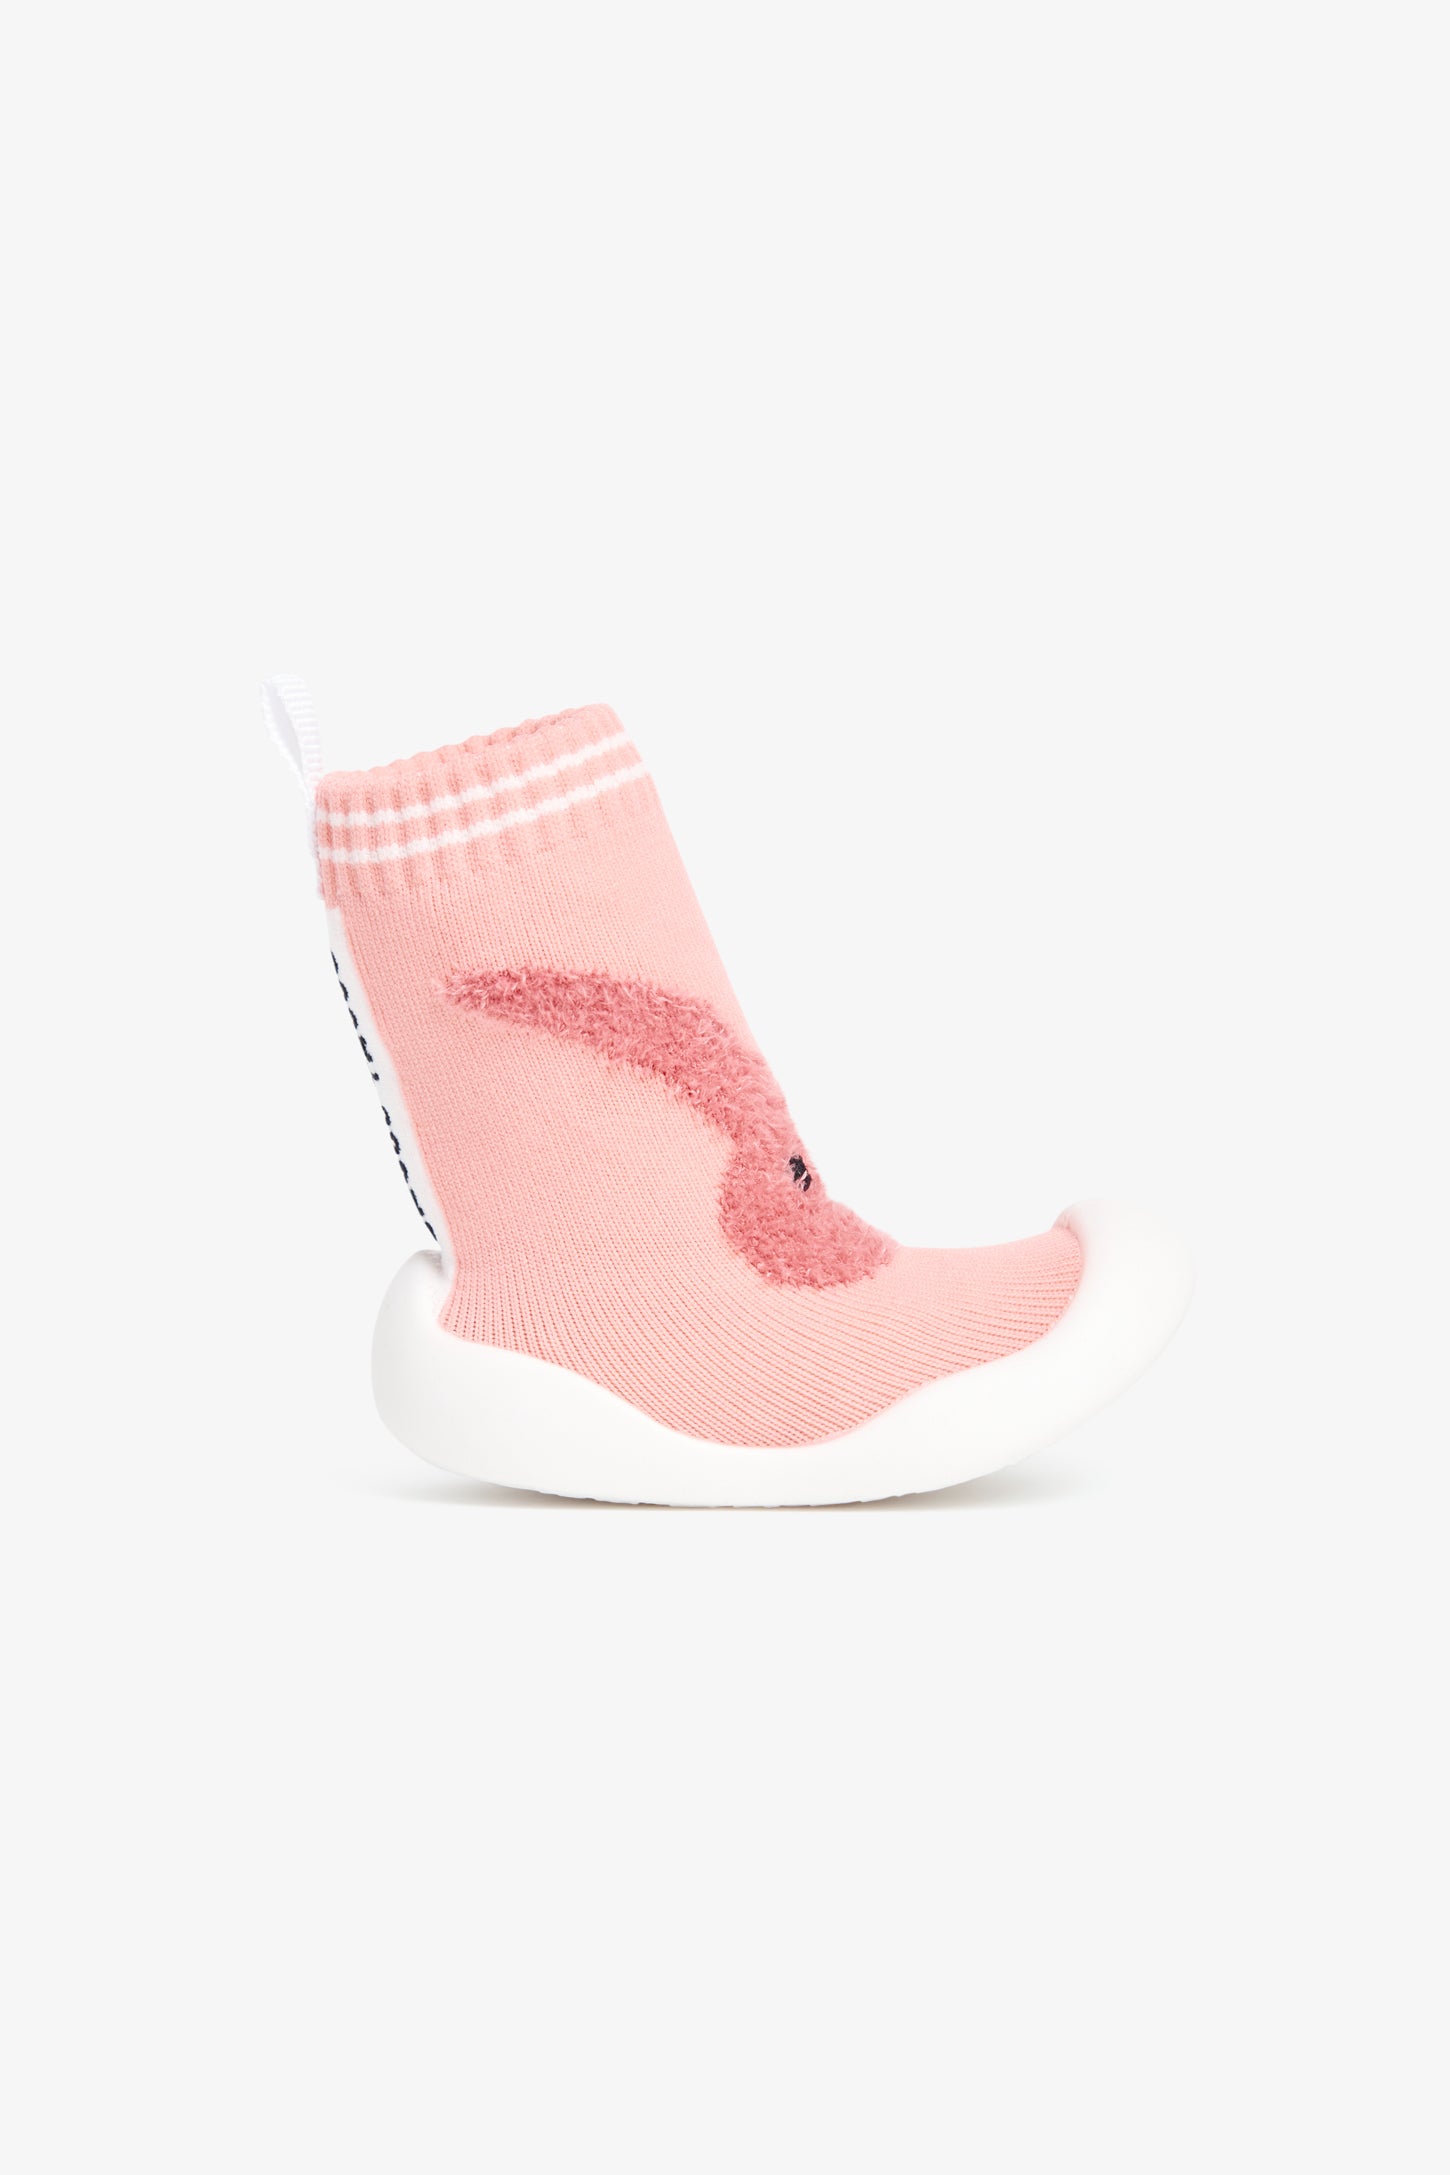 Pantoufle-chaussette en tricot avec semelle moulée - Bébé && ROSE